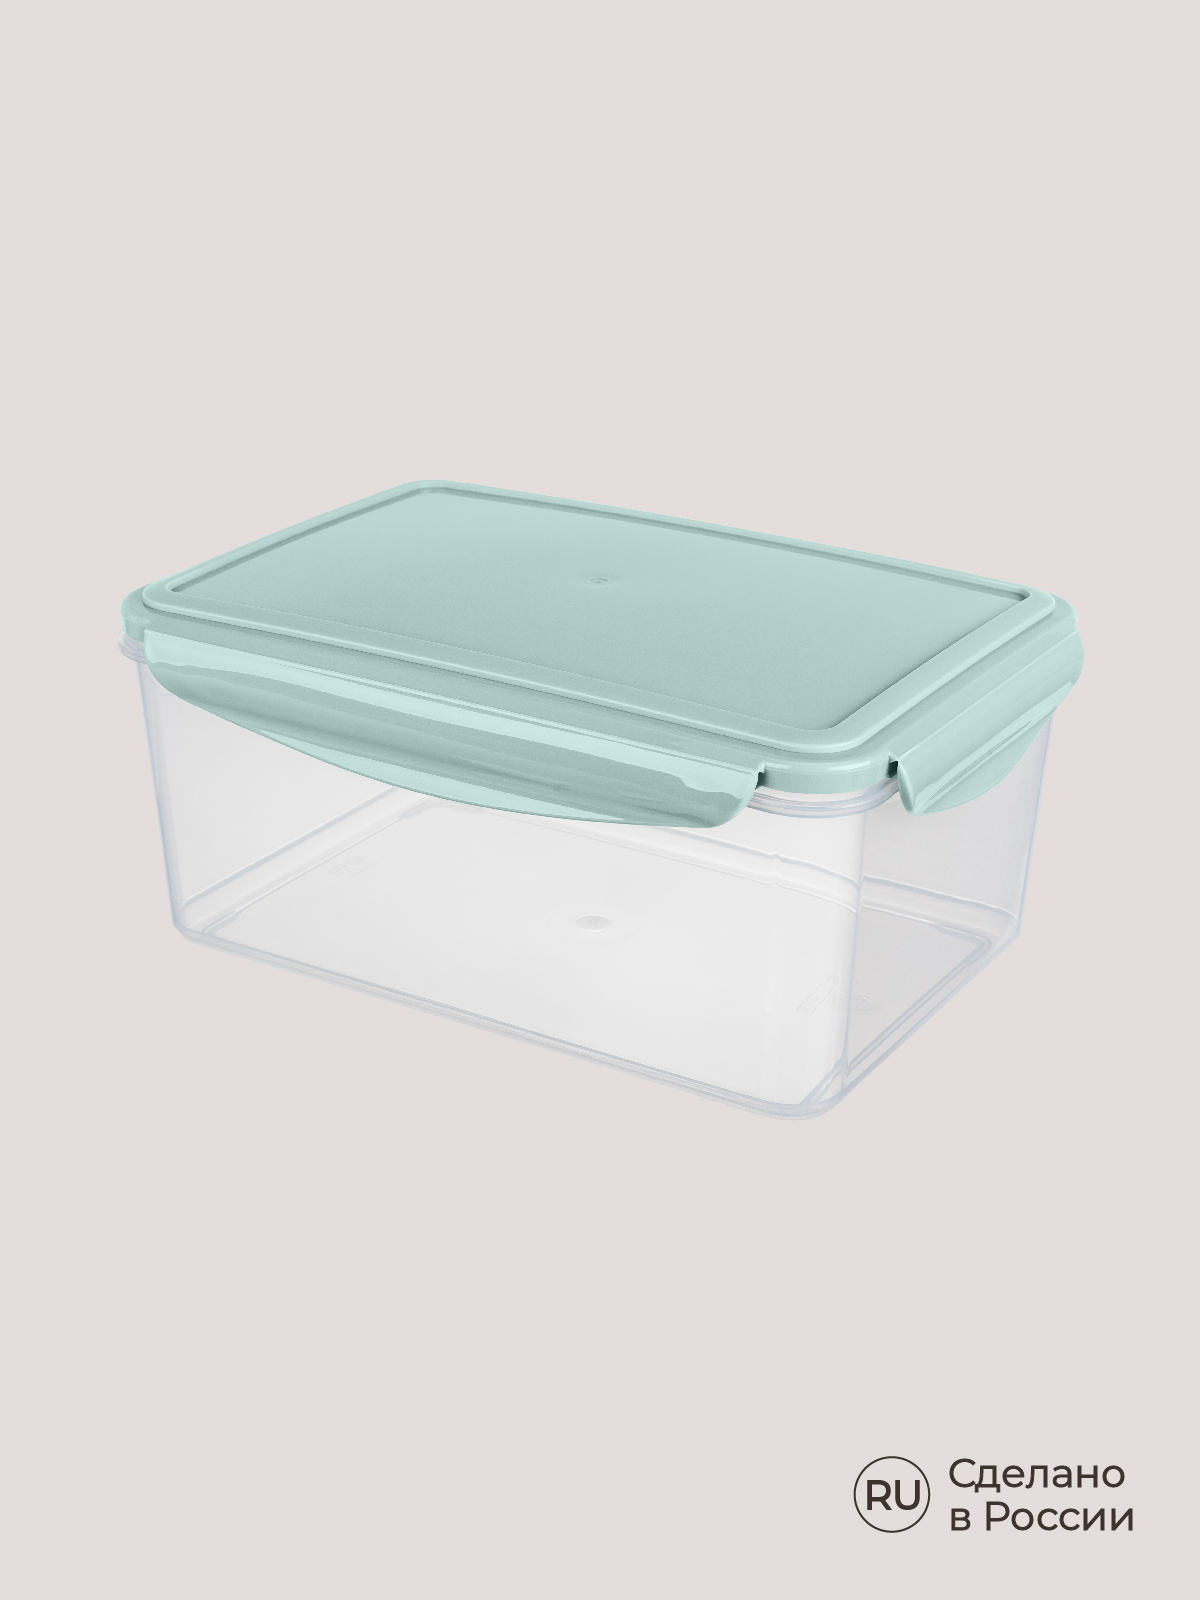 Комплект контейнеров Phibo для холодильника и микроволновой печи Smart Lock 4 шт 2.5л+1.1л+0.5л+0.25л - фото 8